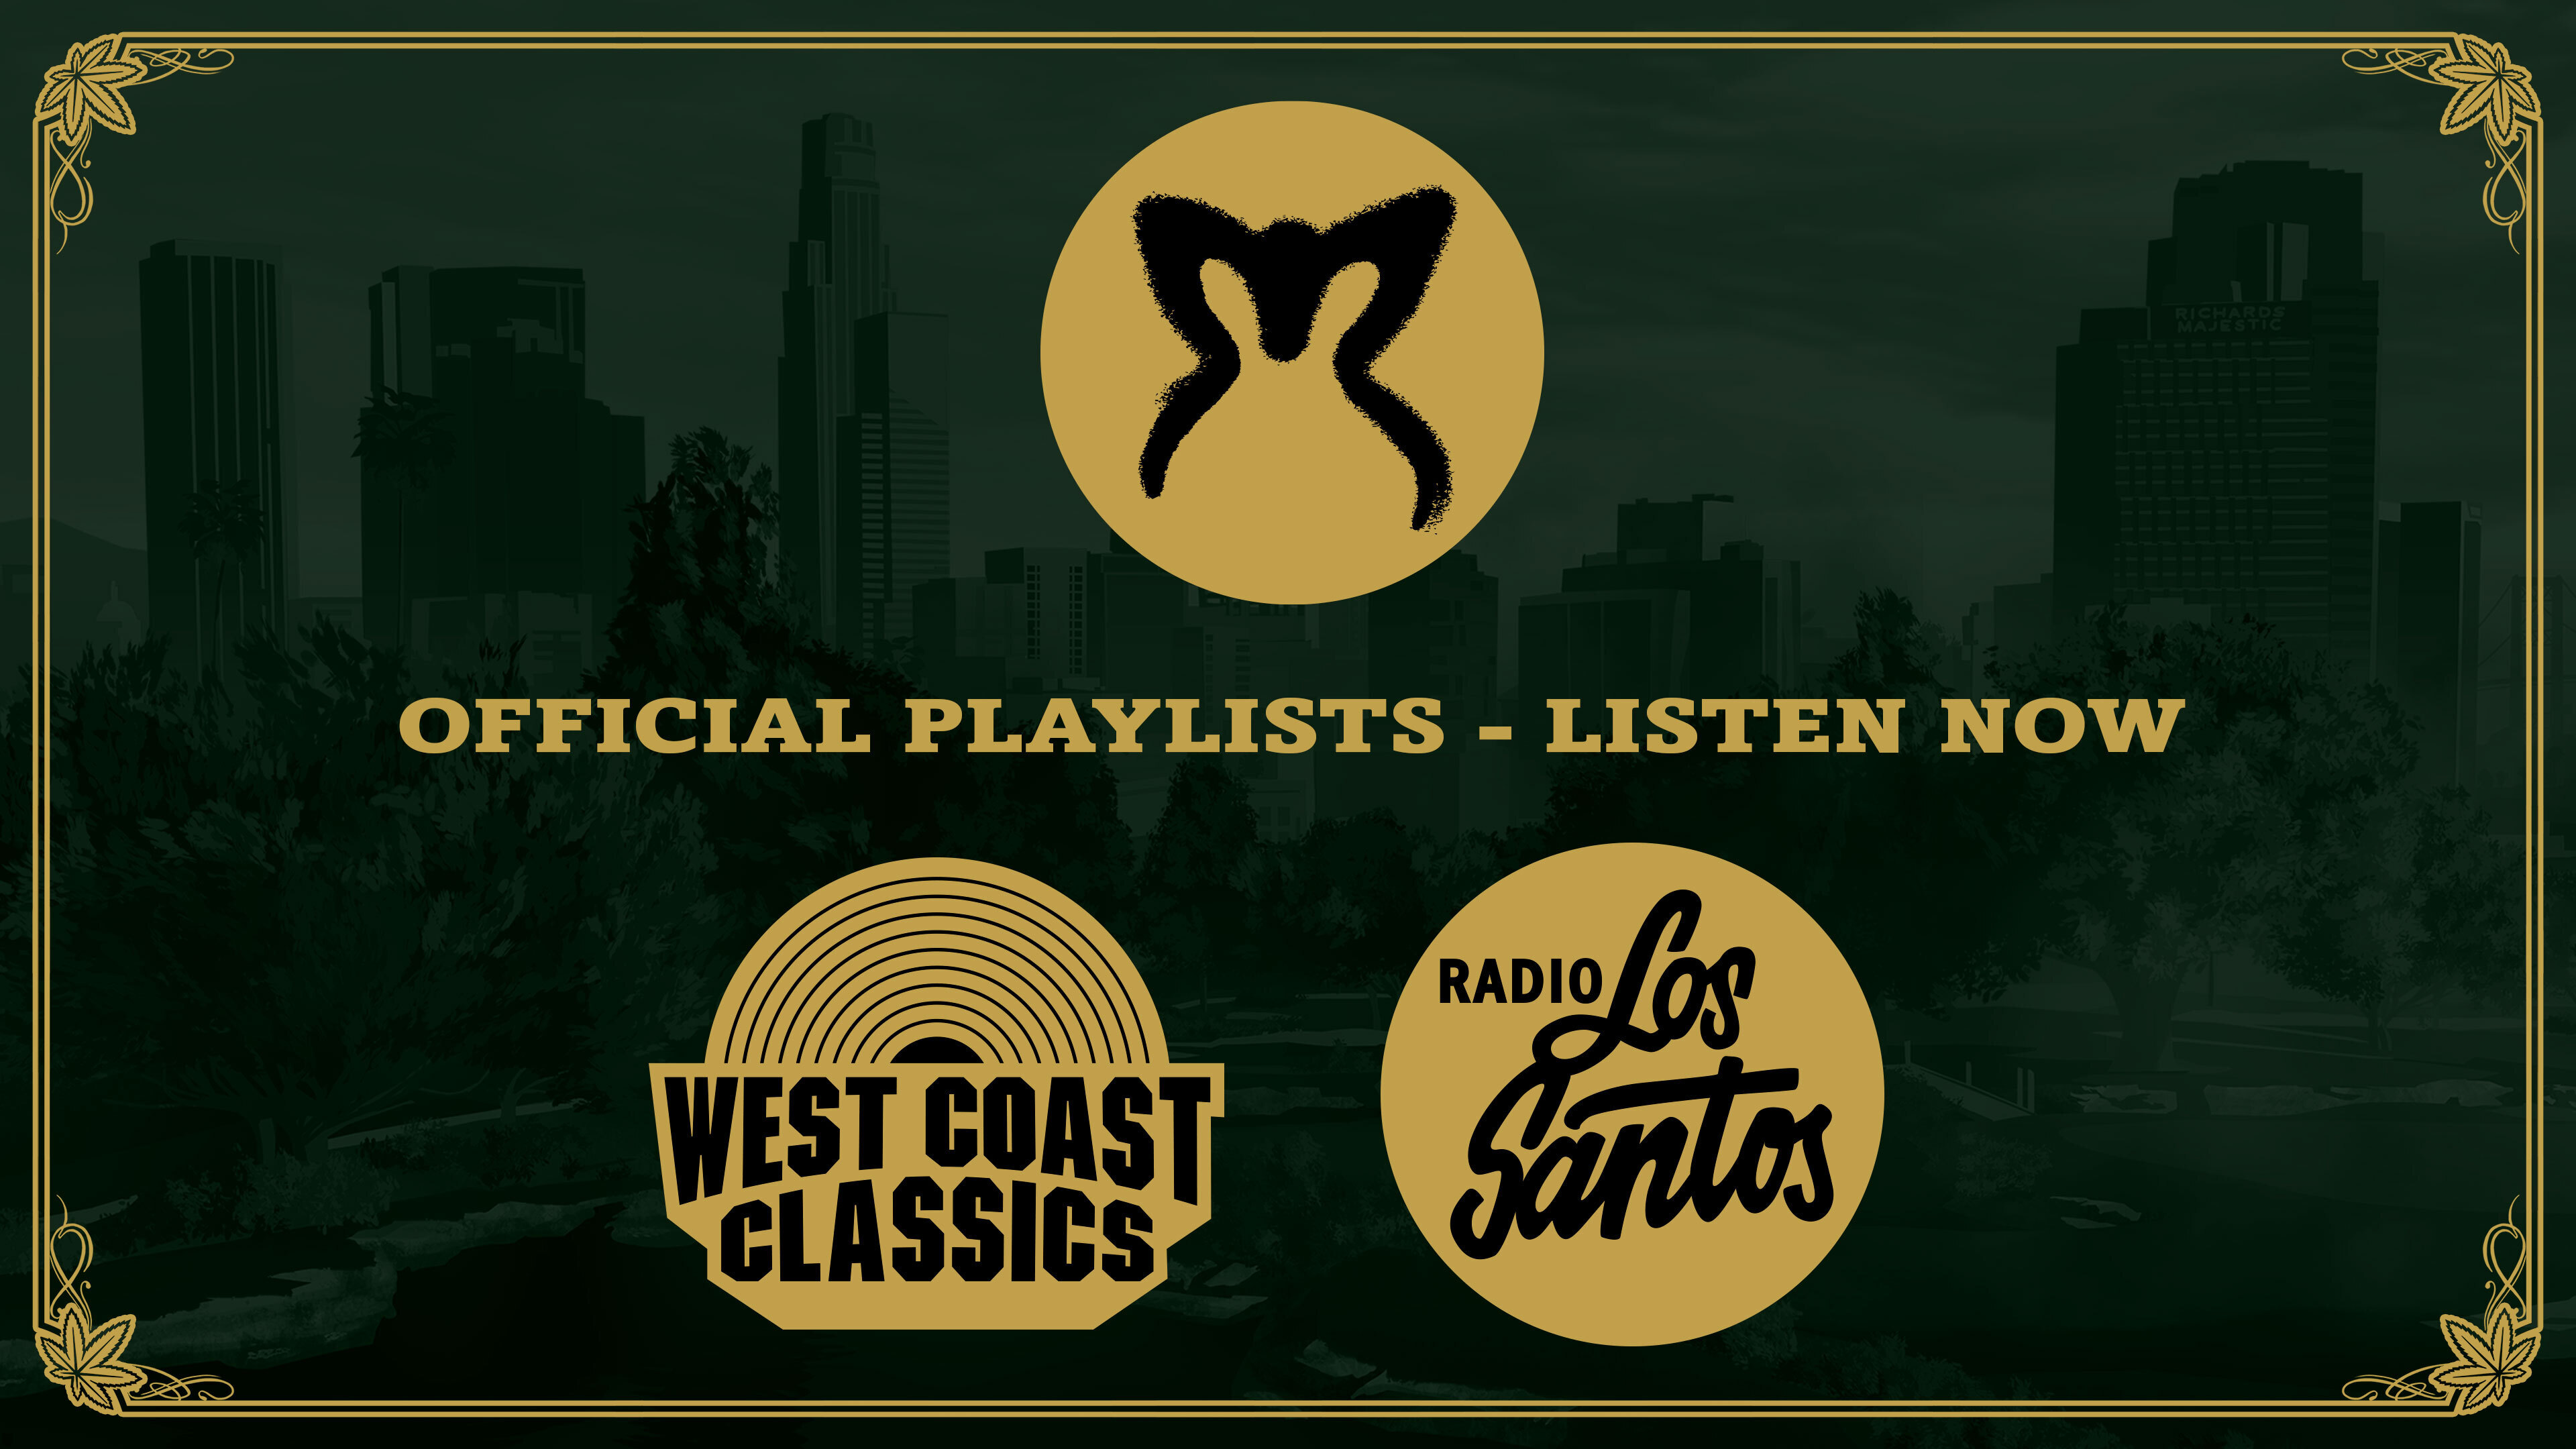 Los Santos Rock Radio  GTA 5 Radio Stations Songs & Tracklist